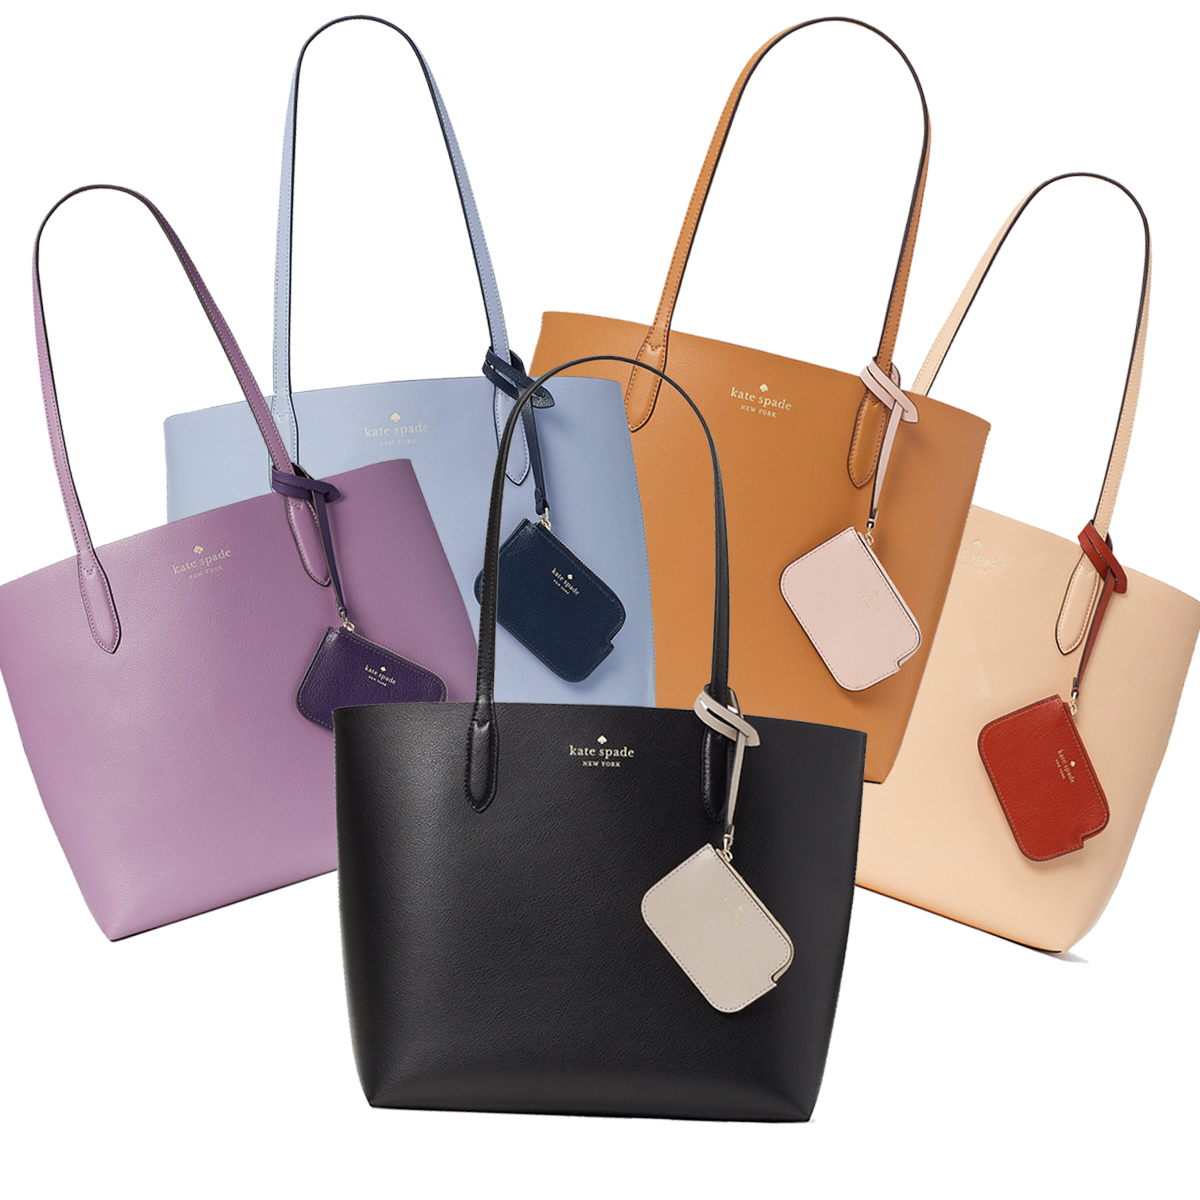 Kate Spade 24-Hour Flash Deal: Get This $360 Shoulder Bag for $79